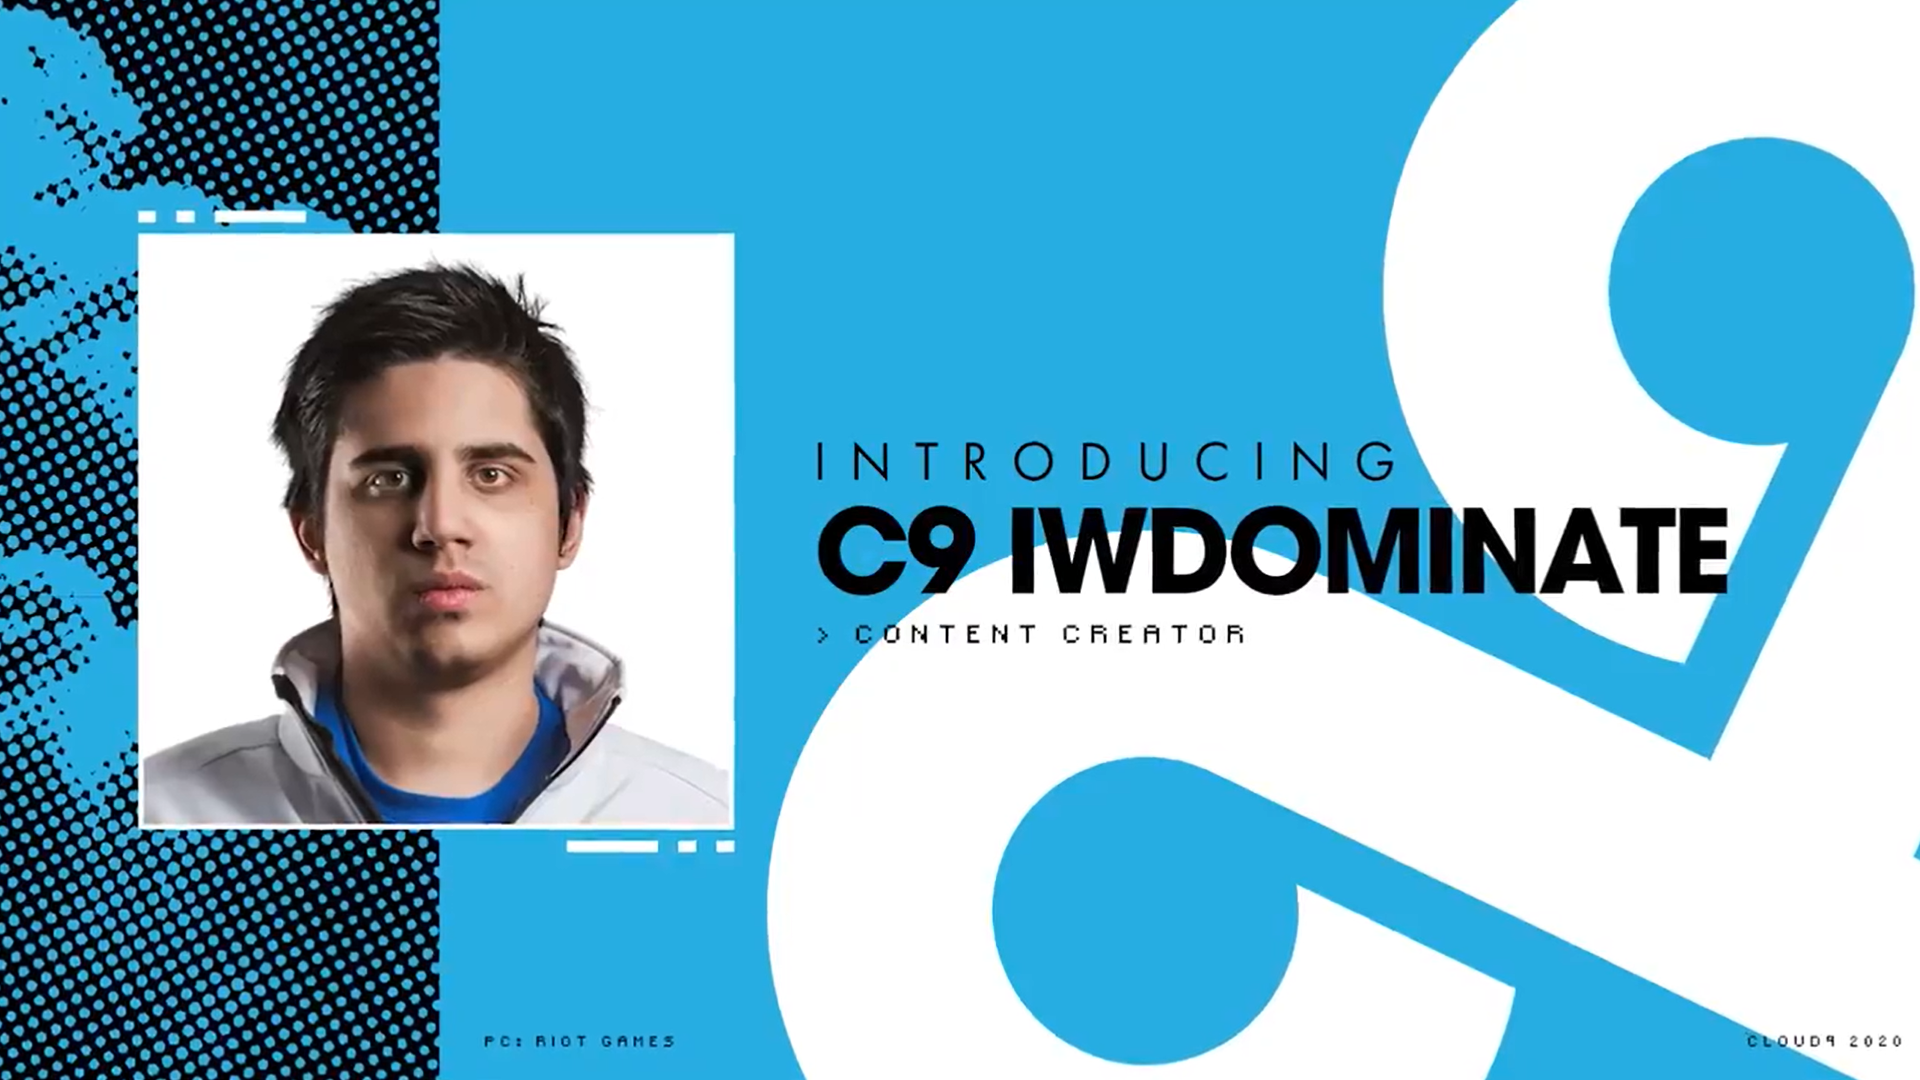 IWillDominate, Cloud9'a yayıncı ve içerik üreticisi olarak katıldı